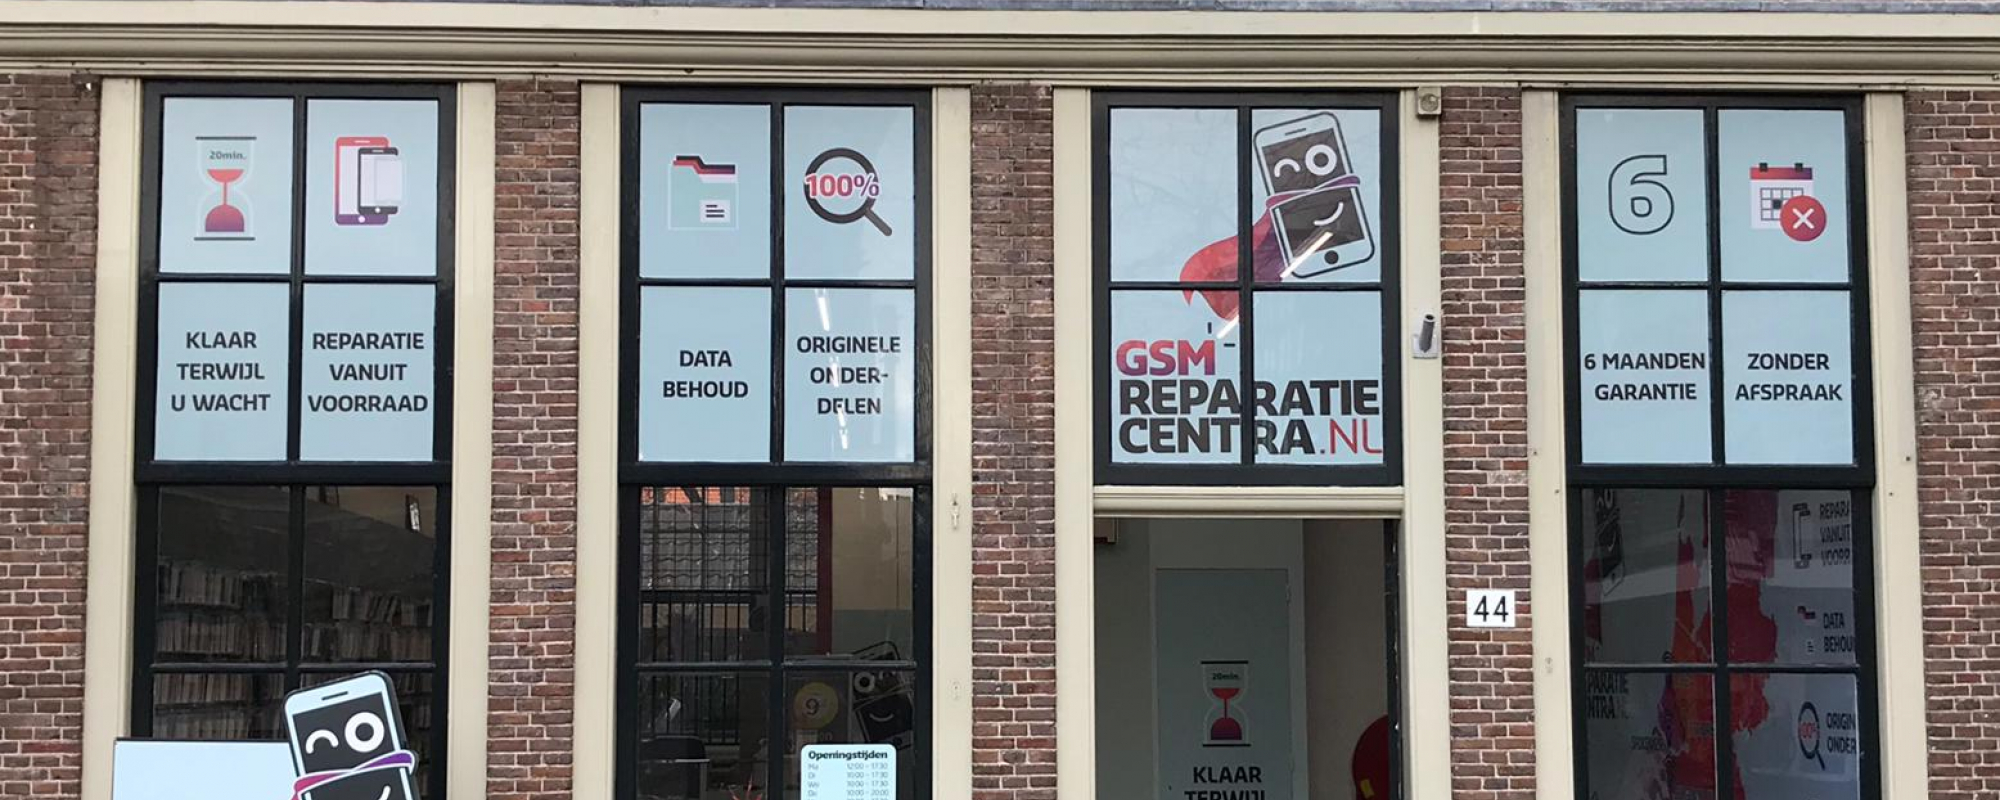 GSM Reparatie Centra Dordrecht